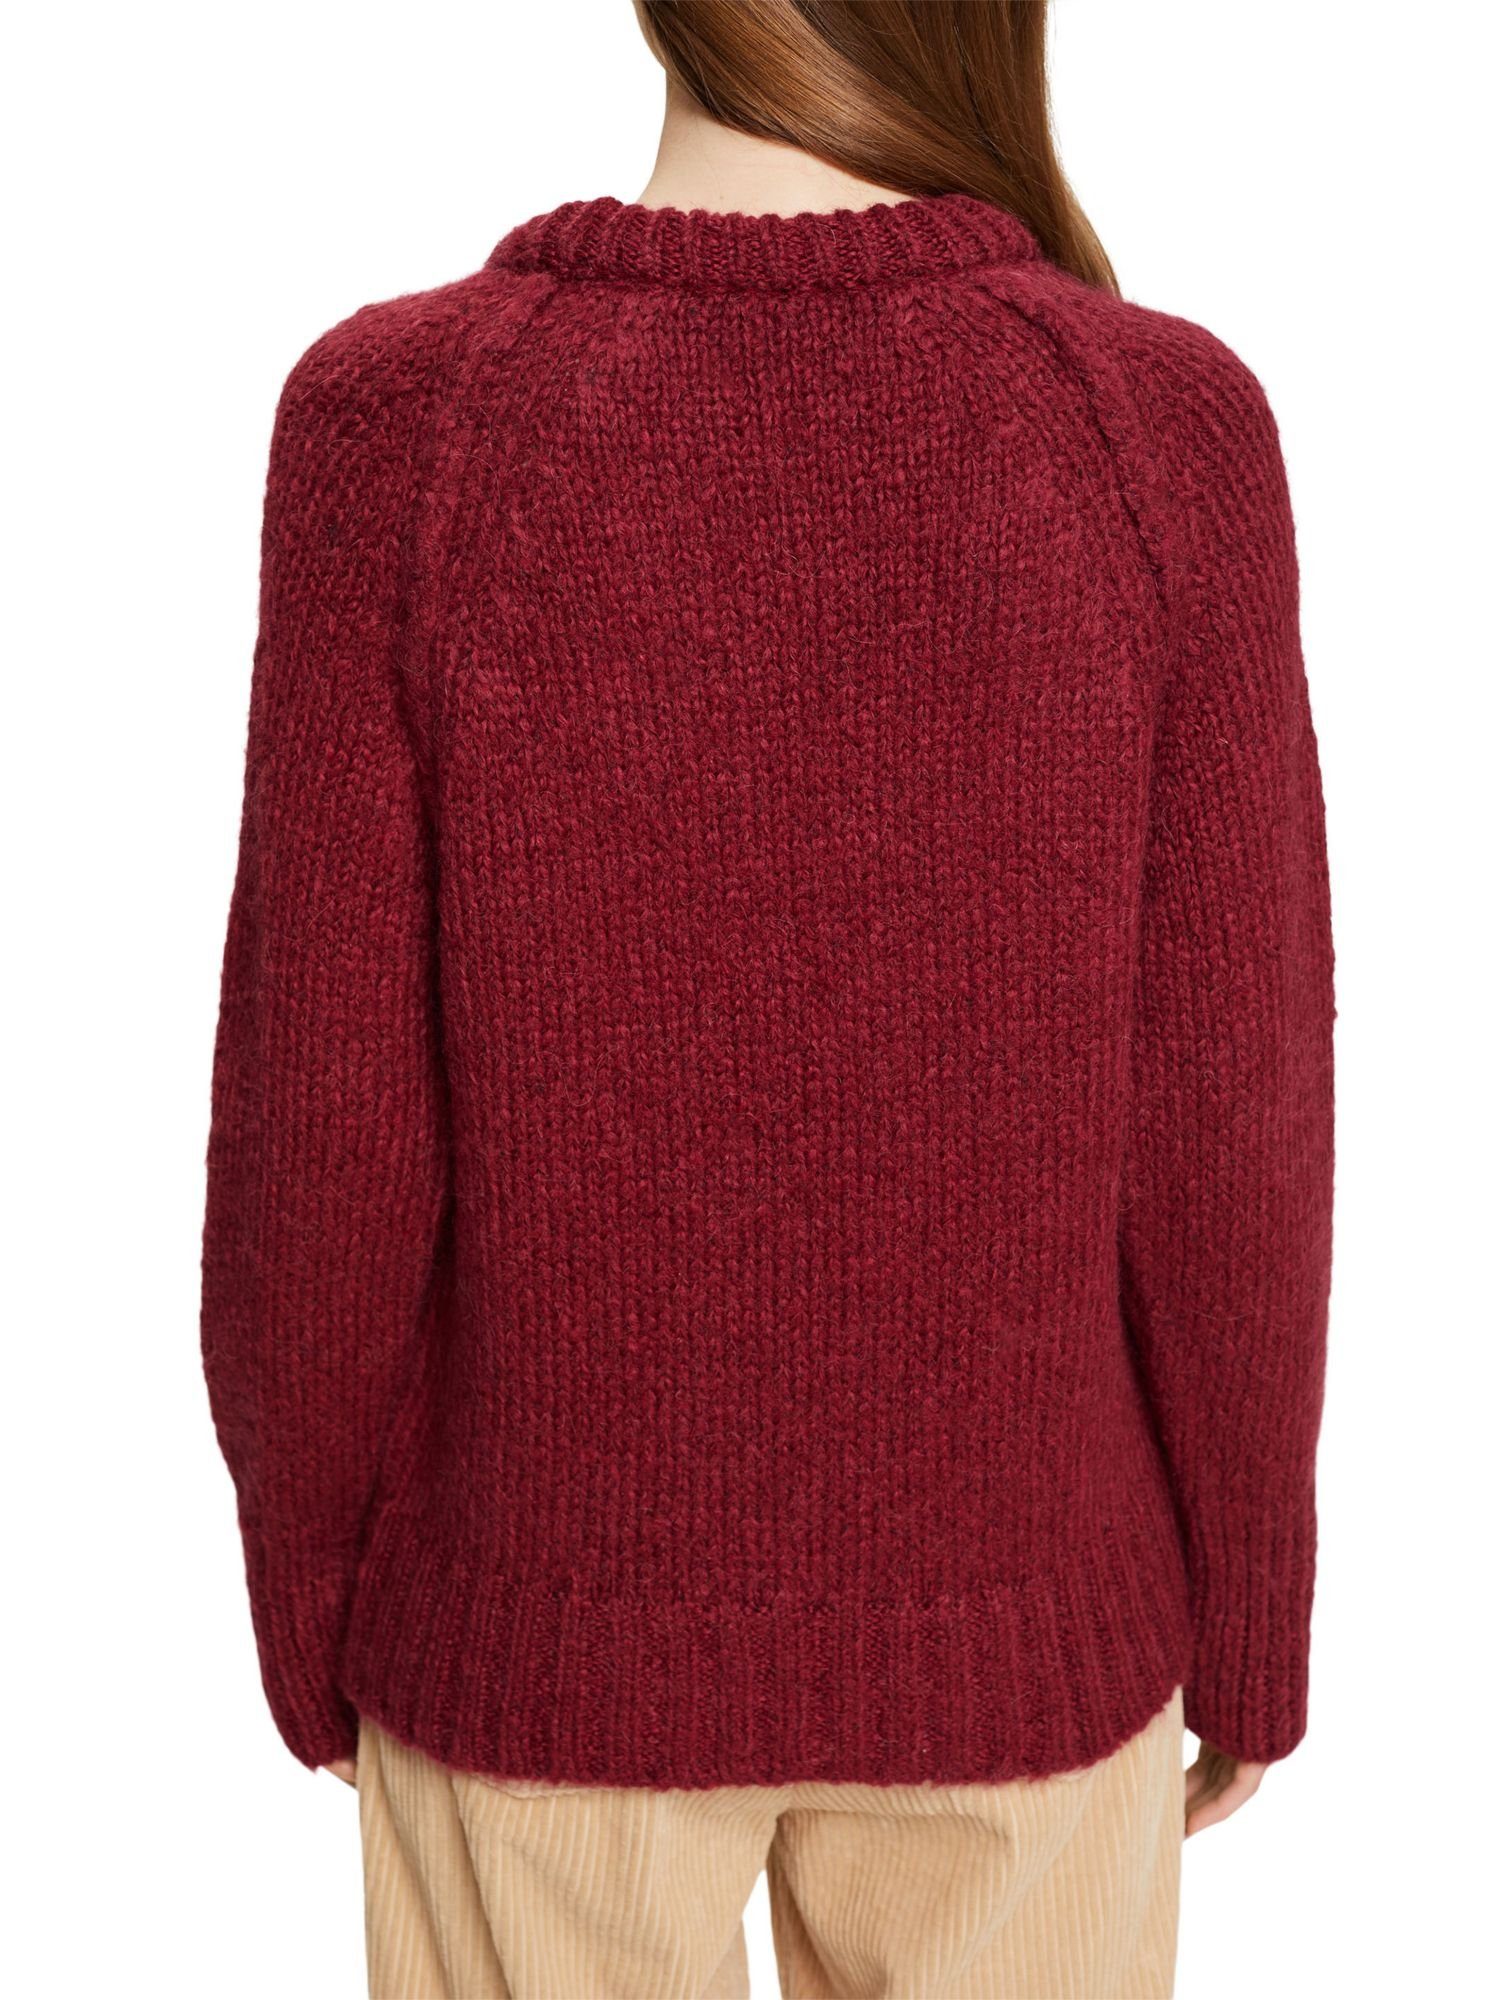 Pullover Strickpullover RED Wollgemisch aus Esprit CHERRY